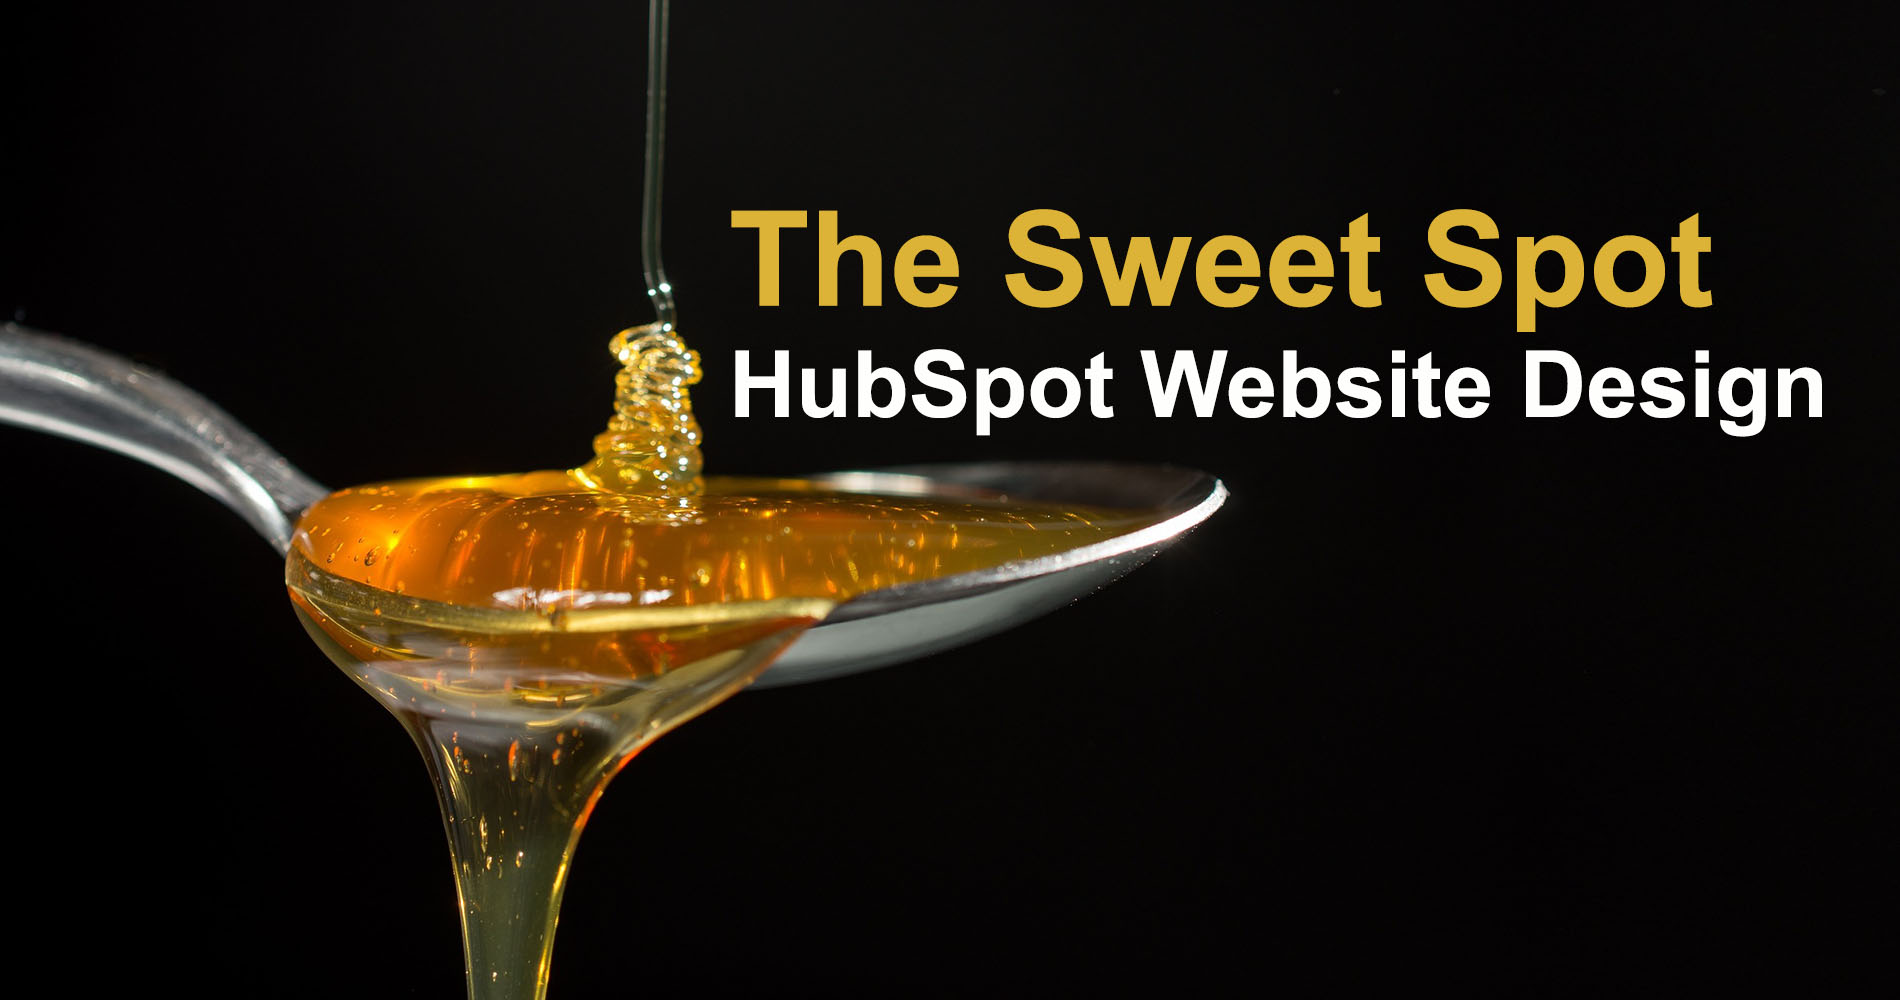 HubSpot Website Design - The Sweet Spot